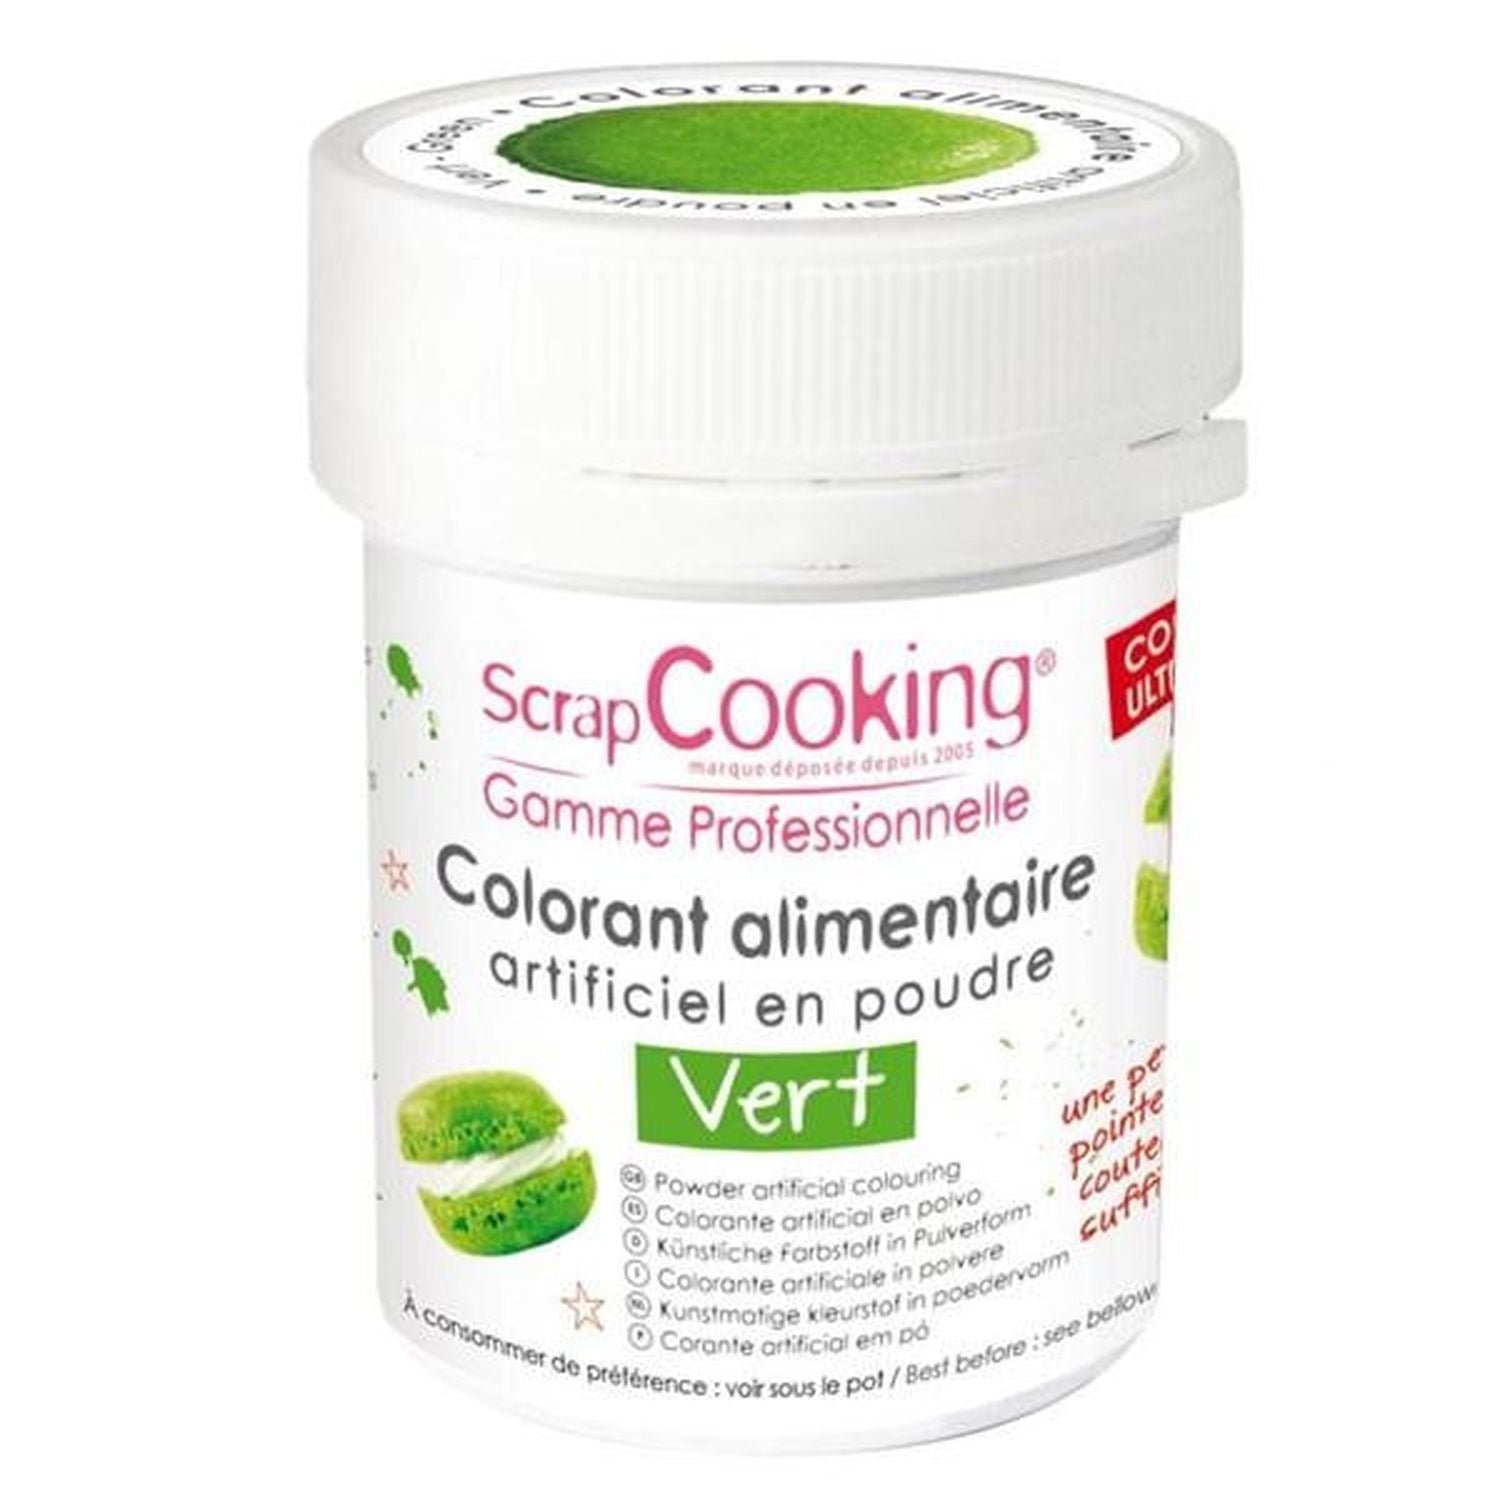 Colorant alimentaire en poudre 15 g - vert Scrapcooking - www